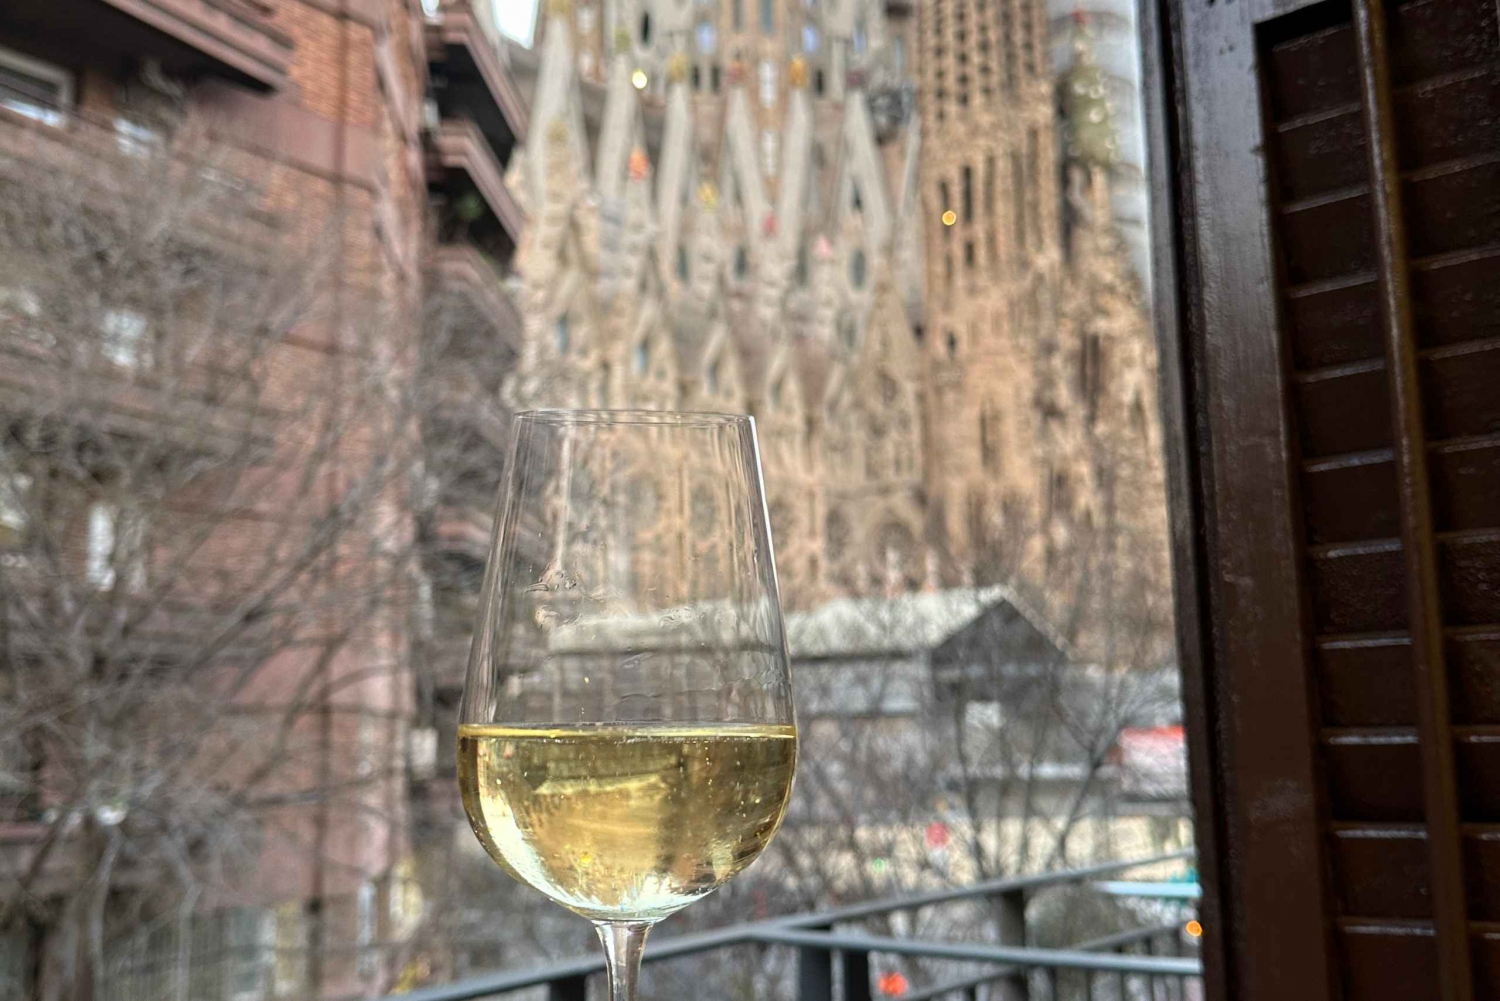 Barcelona: Cata de vinos med utsikt över Sagrada Familia